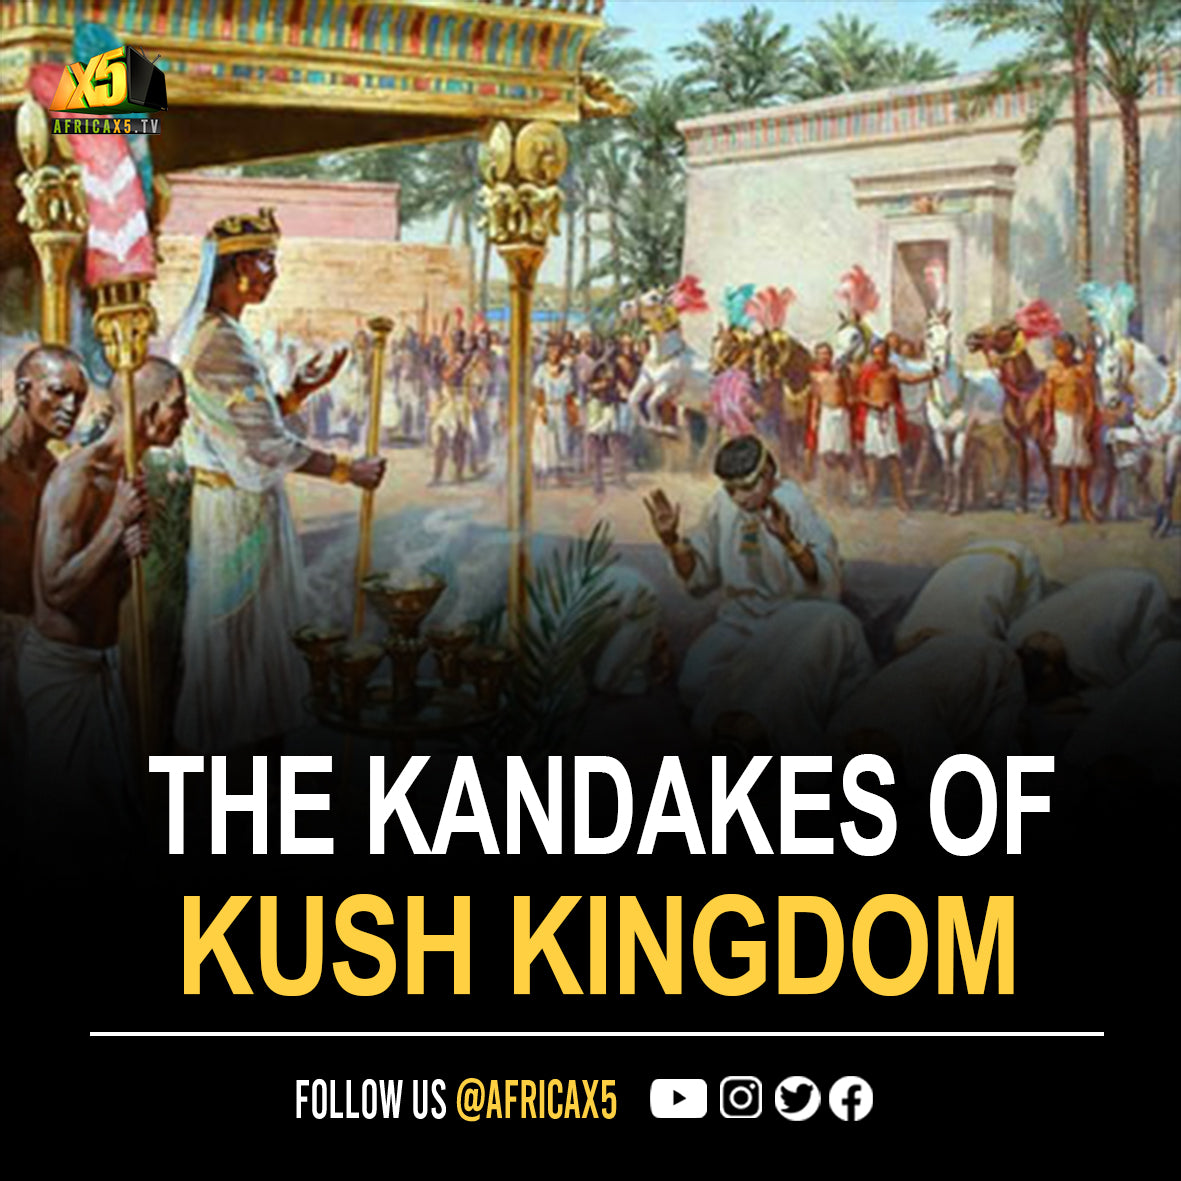 THE KANDAKES (EMPRESSES) OF THE KINGDOM OF KUSH